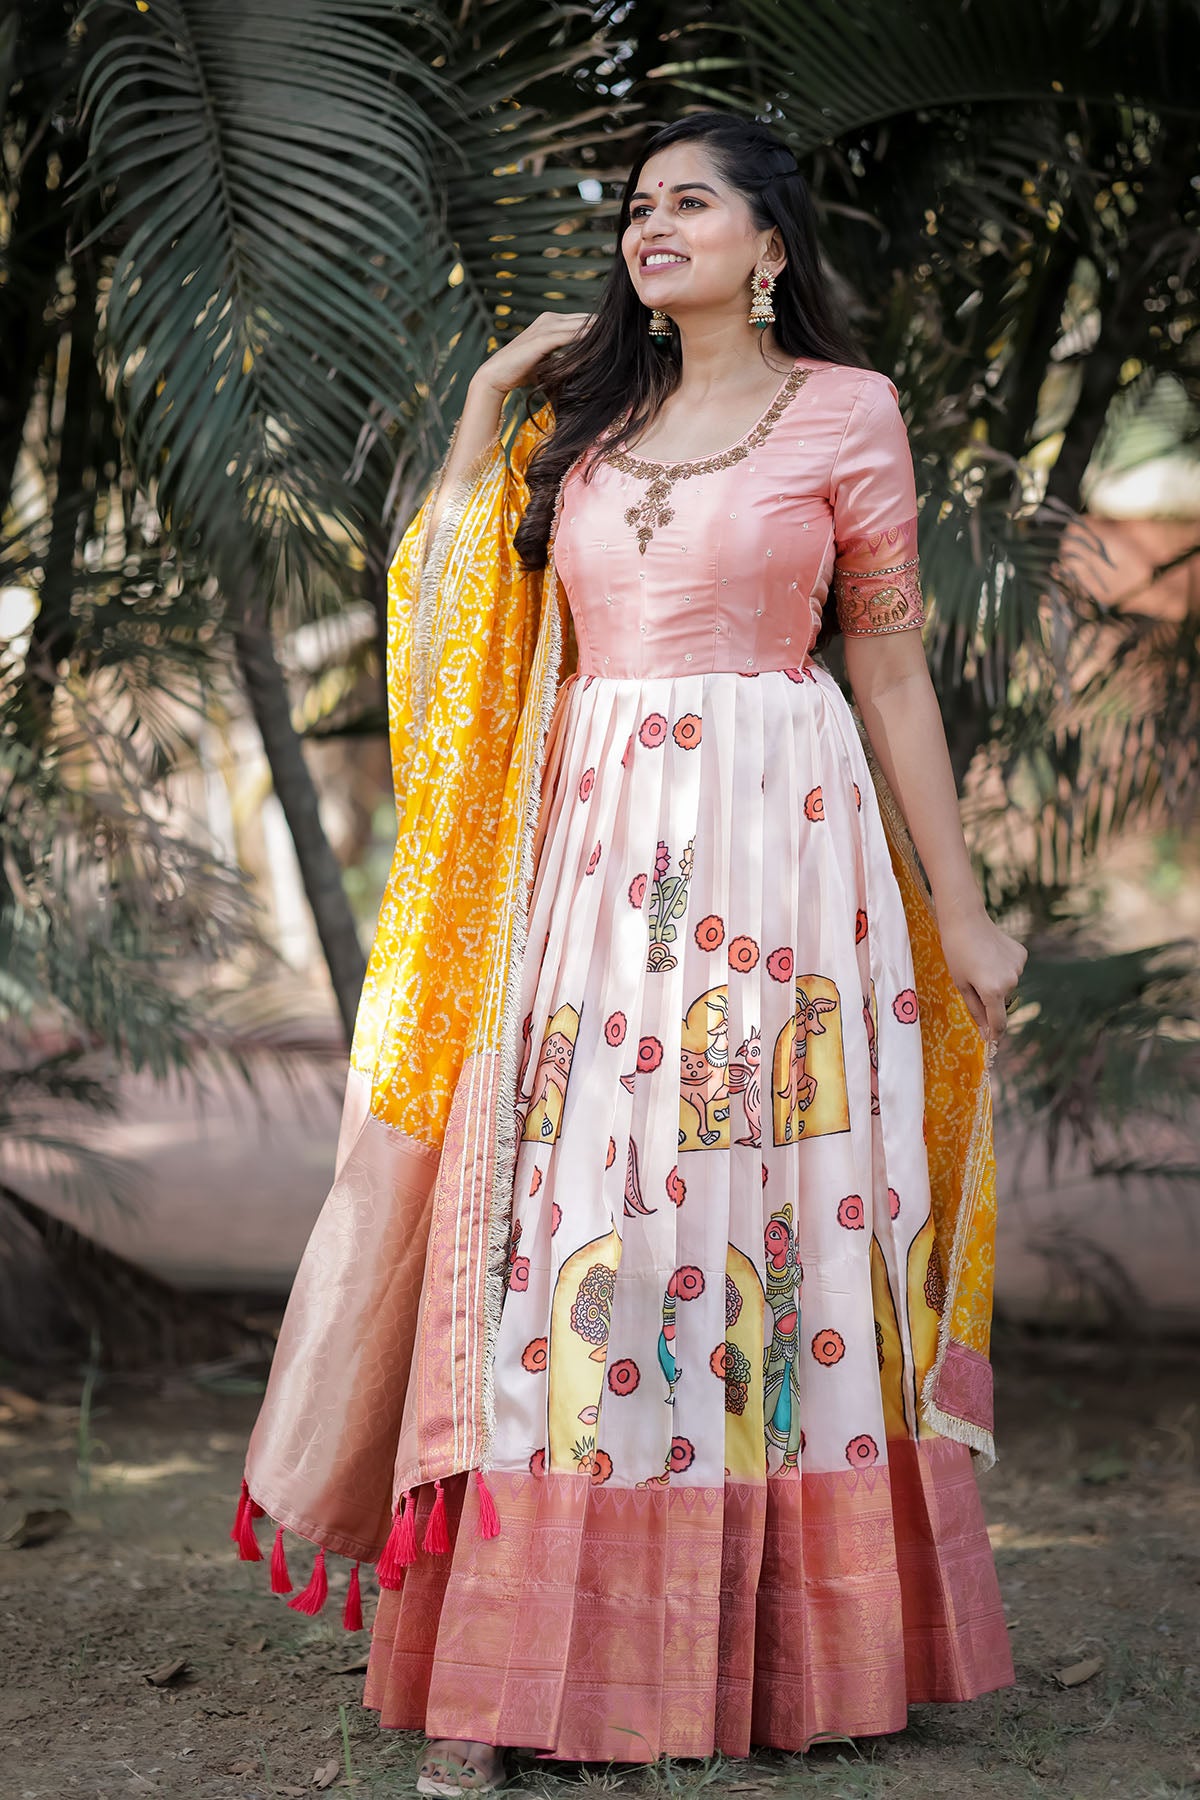 ANARKALI | Girl photo poses, Indian photoshoot, Photoshoot dress